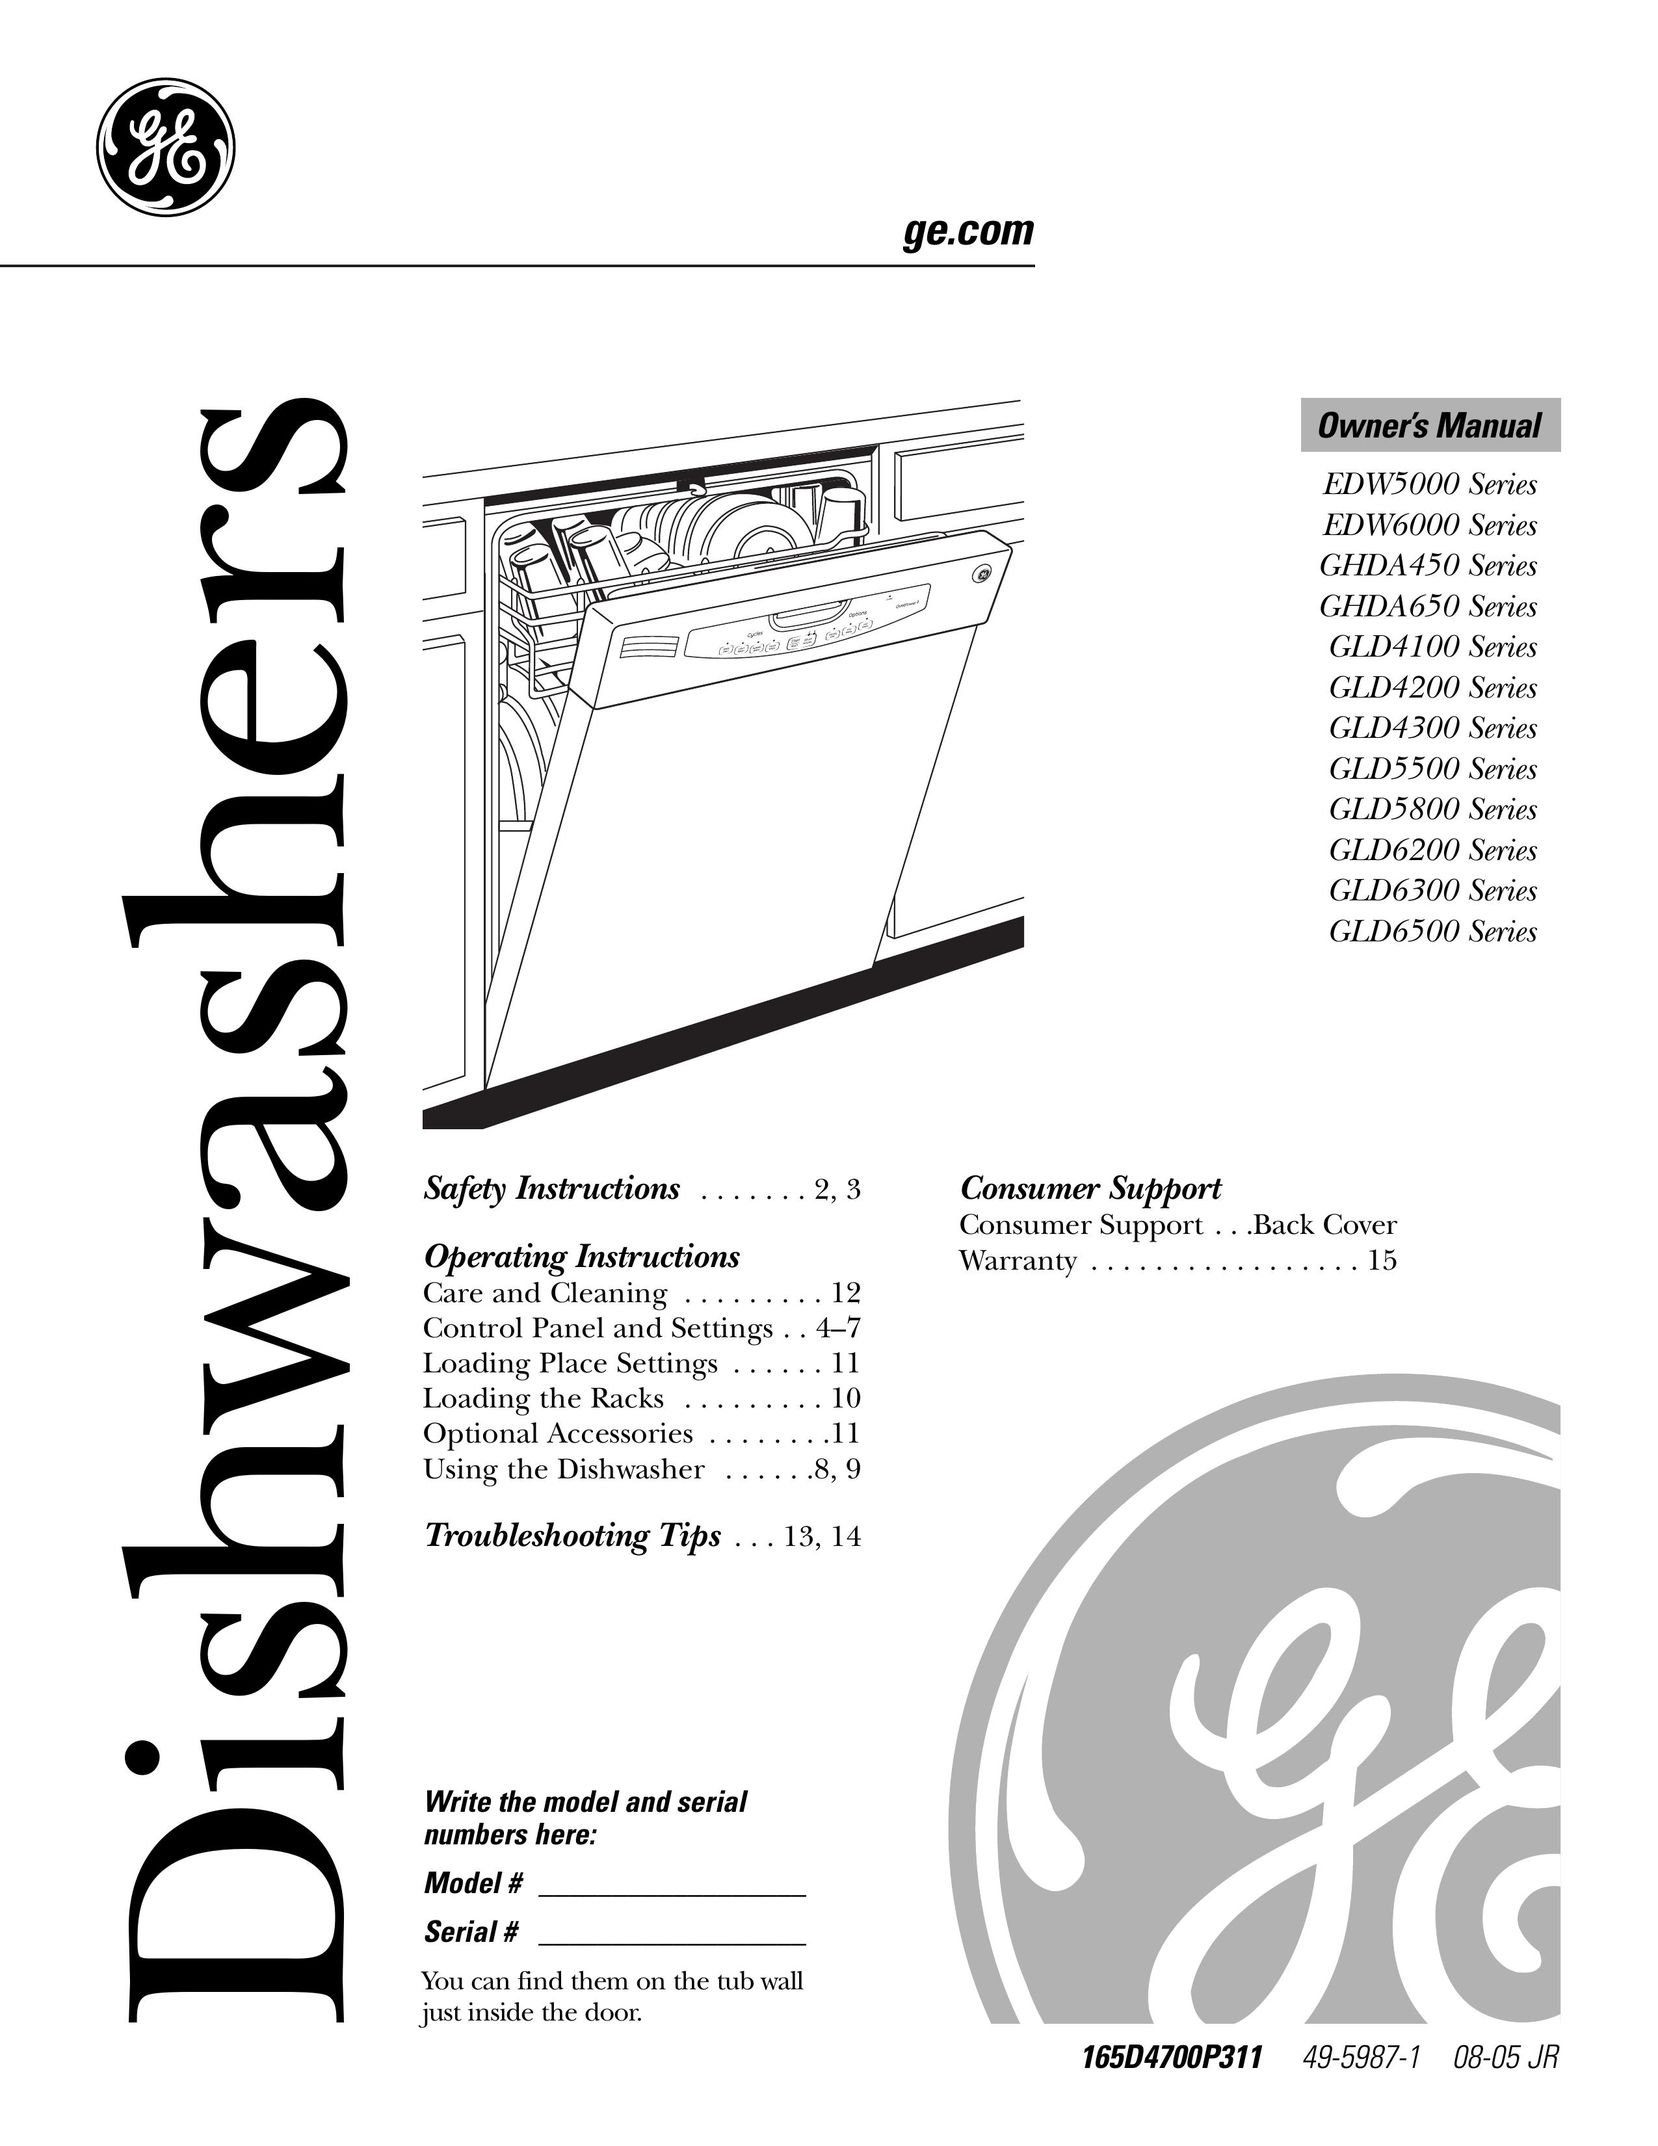 GE Monogram GLD4200 Dishwasher User Manual